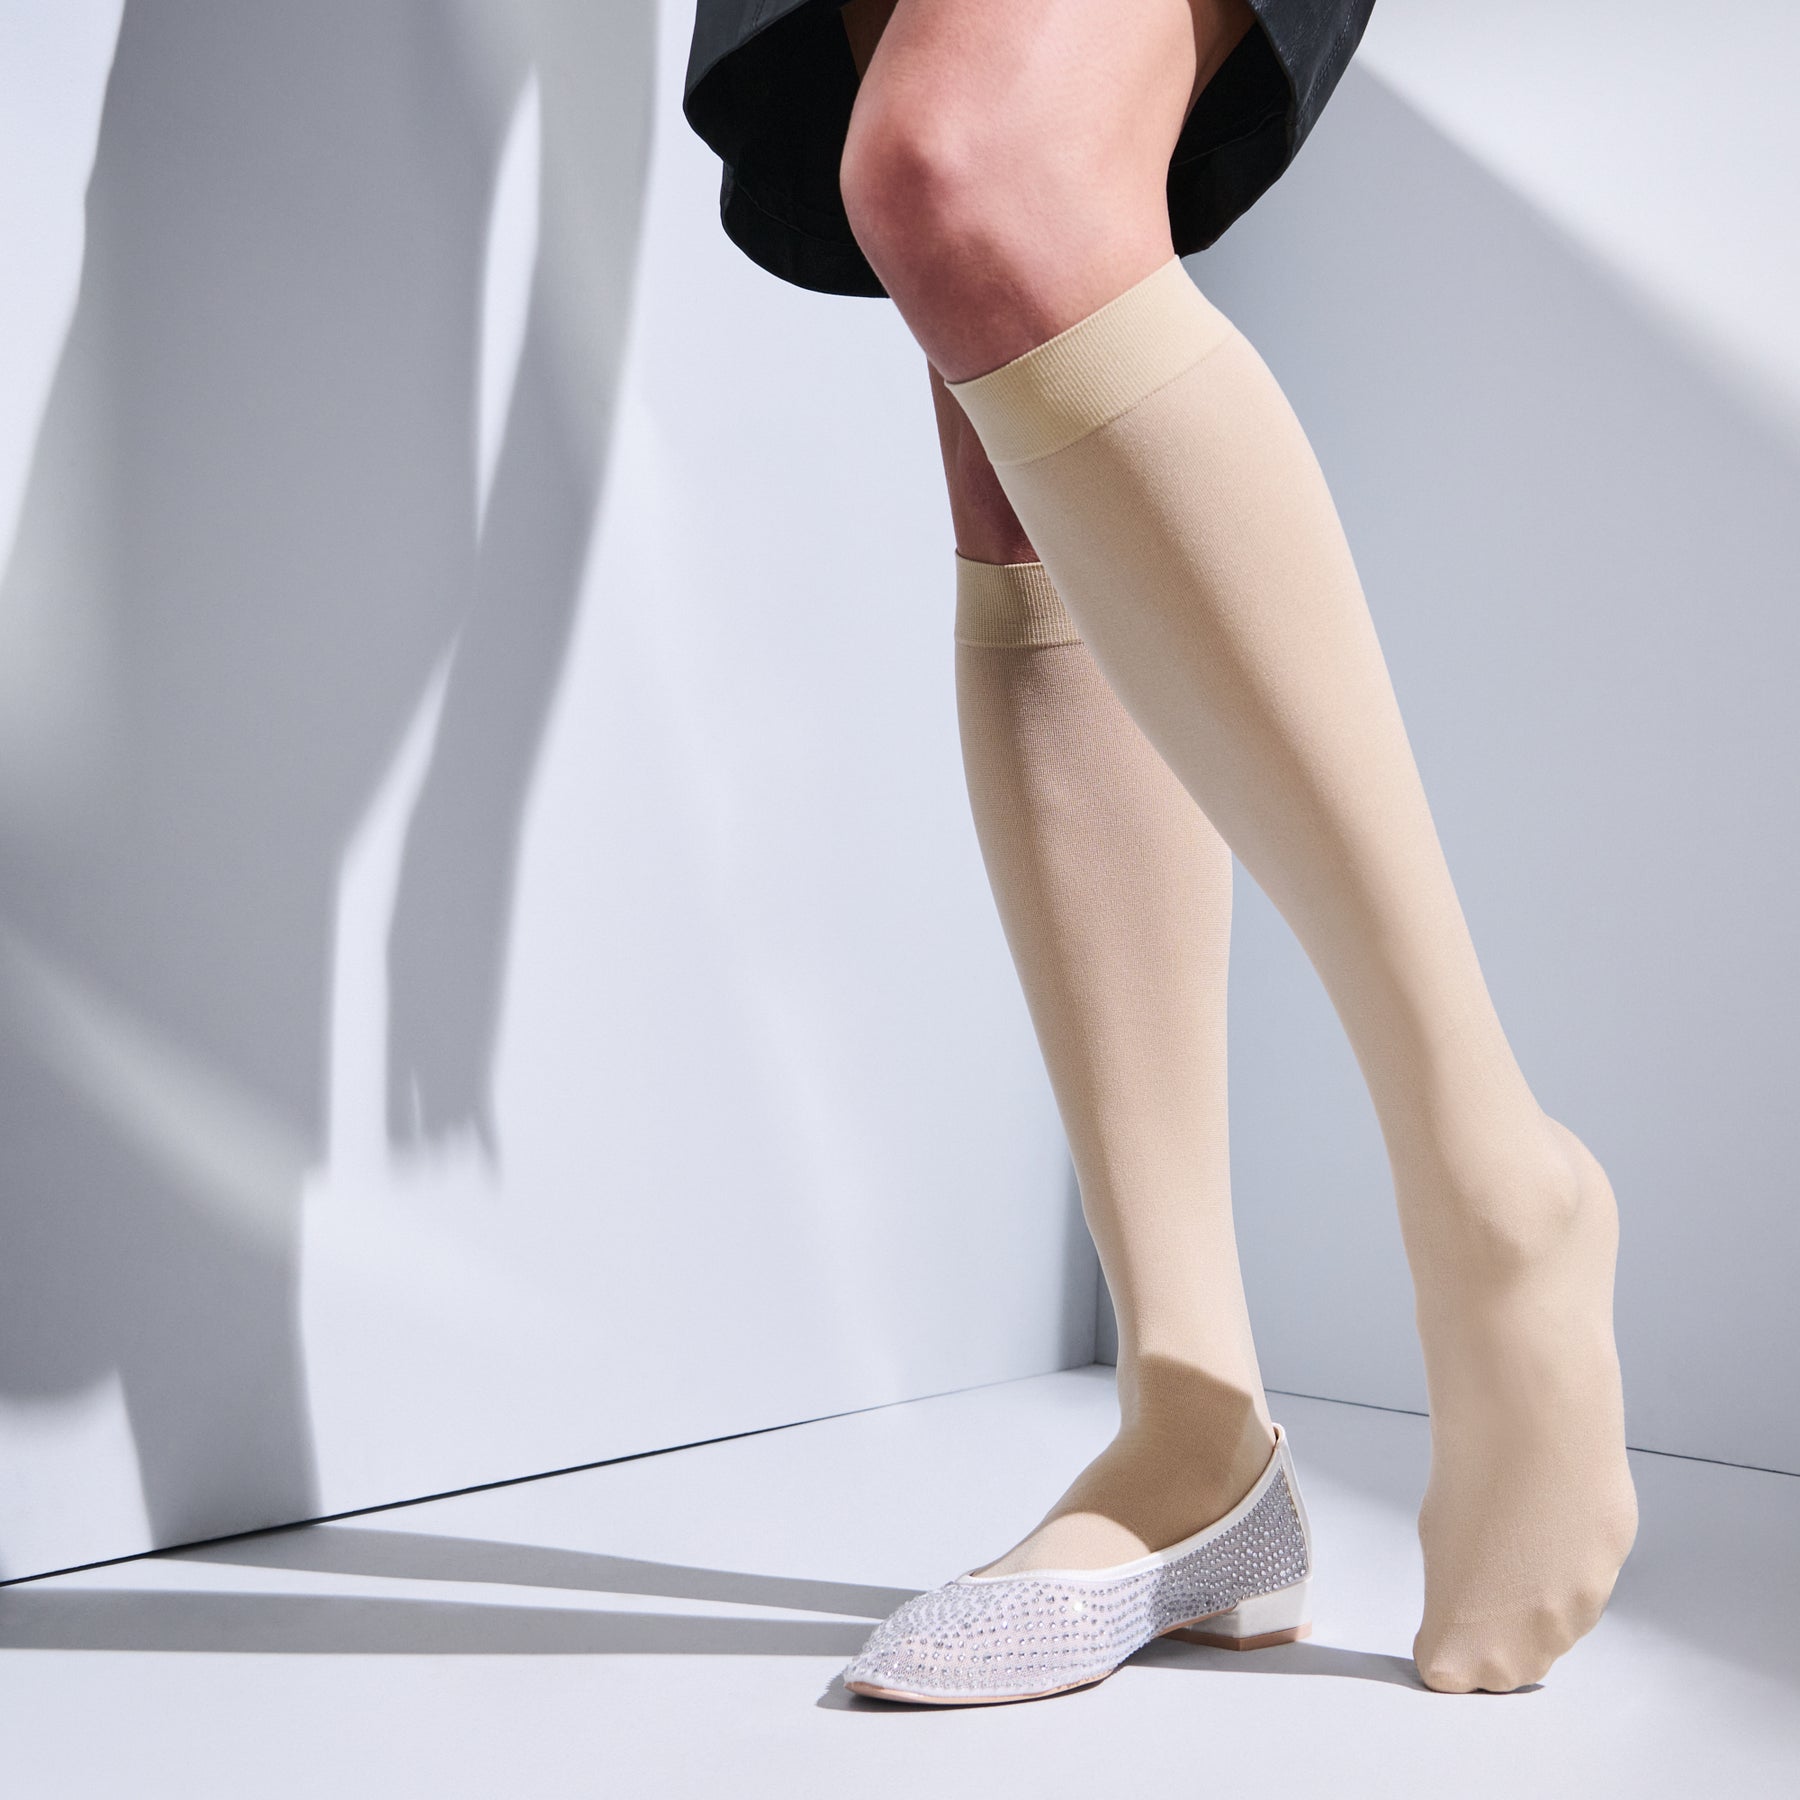 SRC Compression Socks for Women – SRC Health